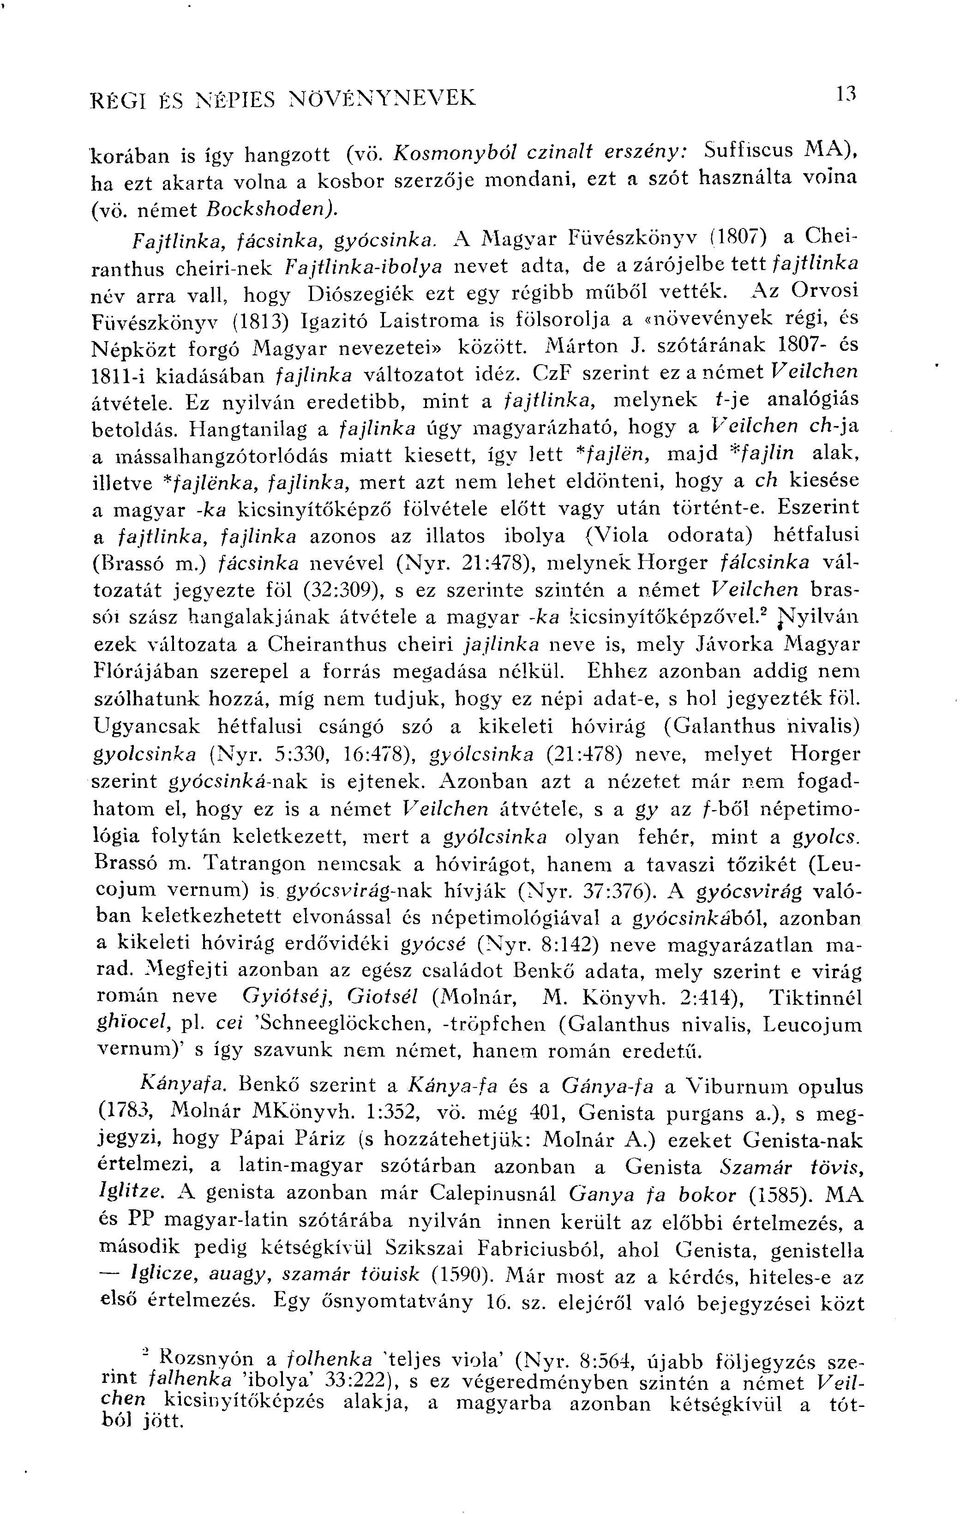 A Magyar Füvészkönyv (1807) a Cheiranthus cheiri-nek Fajtlinka-ibolya nevet adta, de a zárójelbe tett fajtlinka név arra vall, hogy Diószegiék ezt egy régibb műből vették.